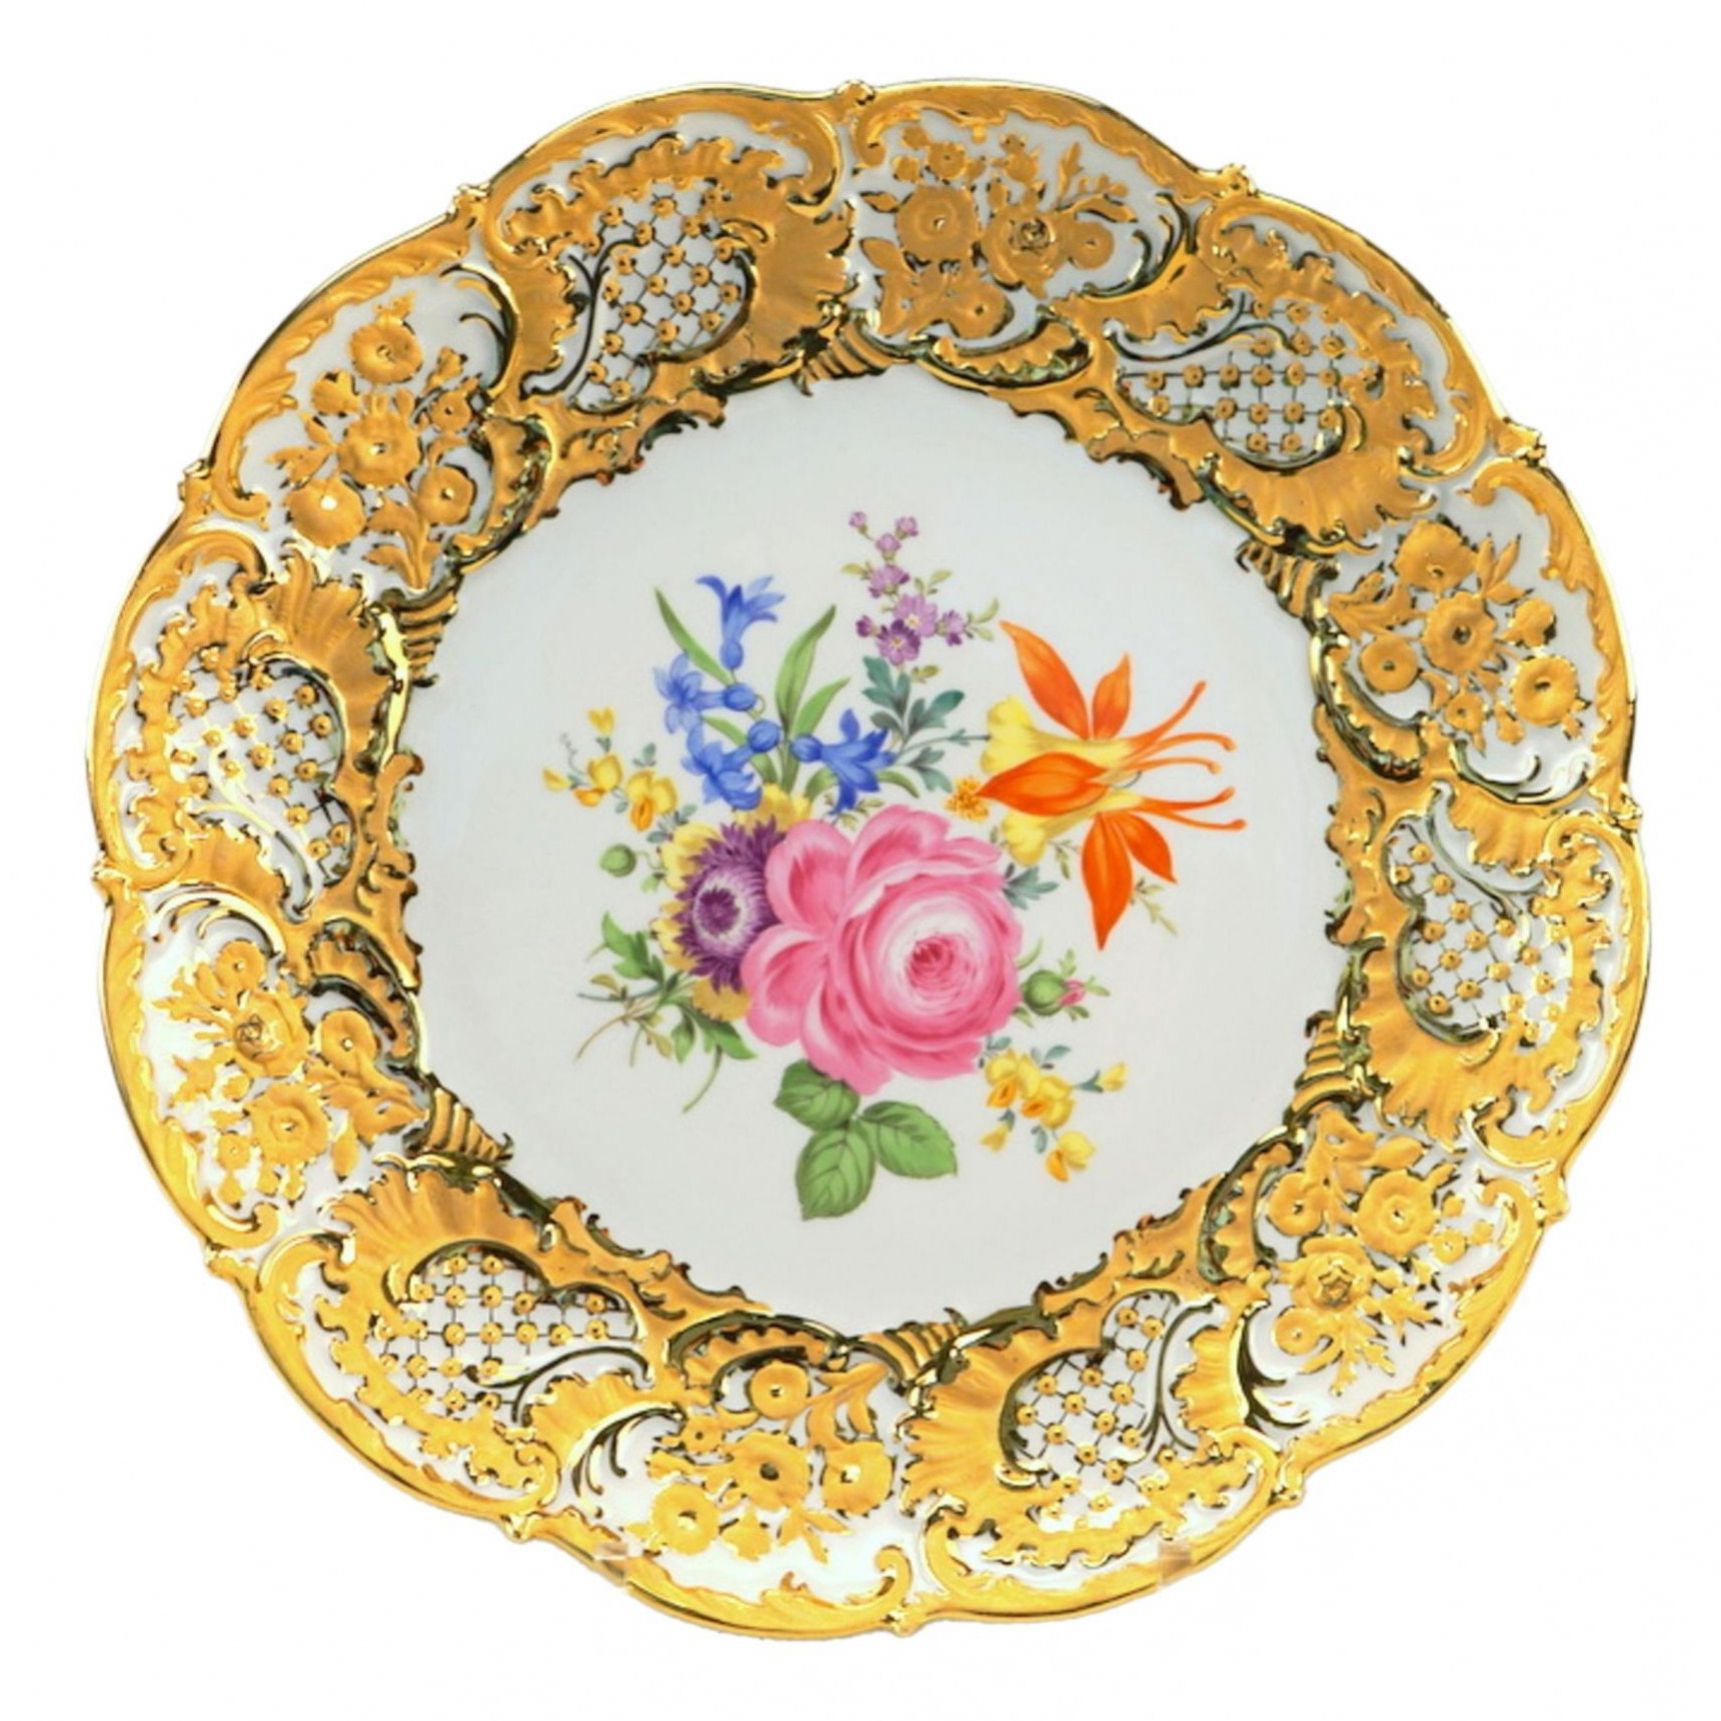 Magnificent-Meissen-porcelain-dish-